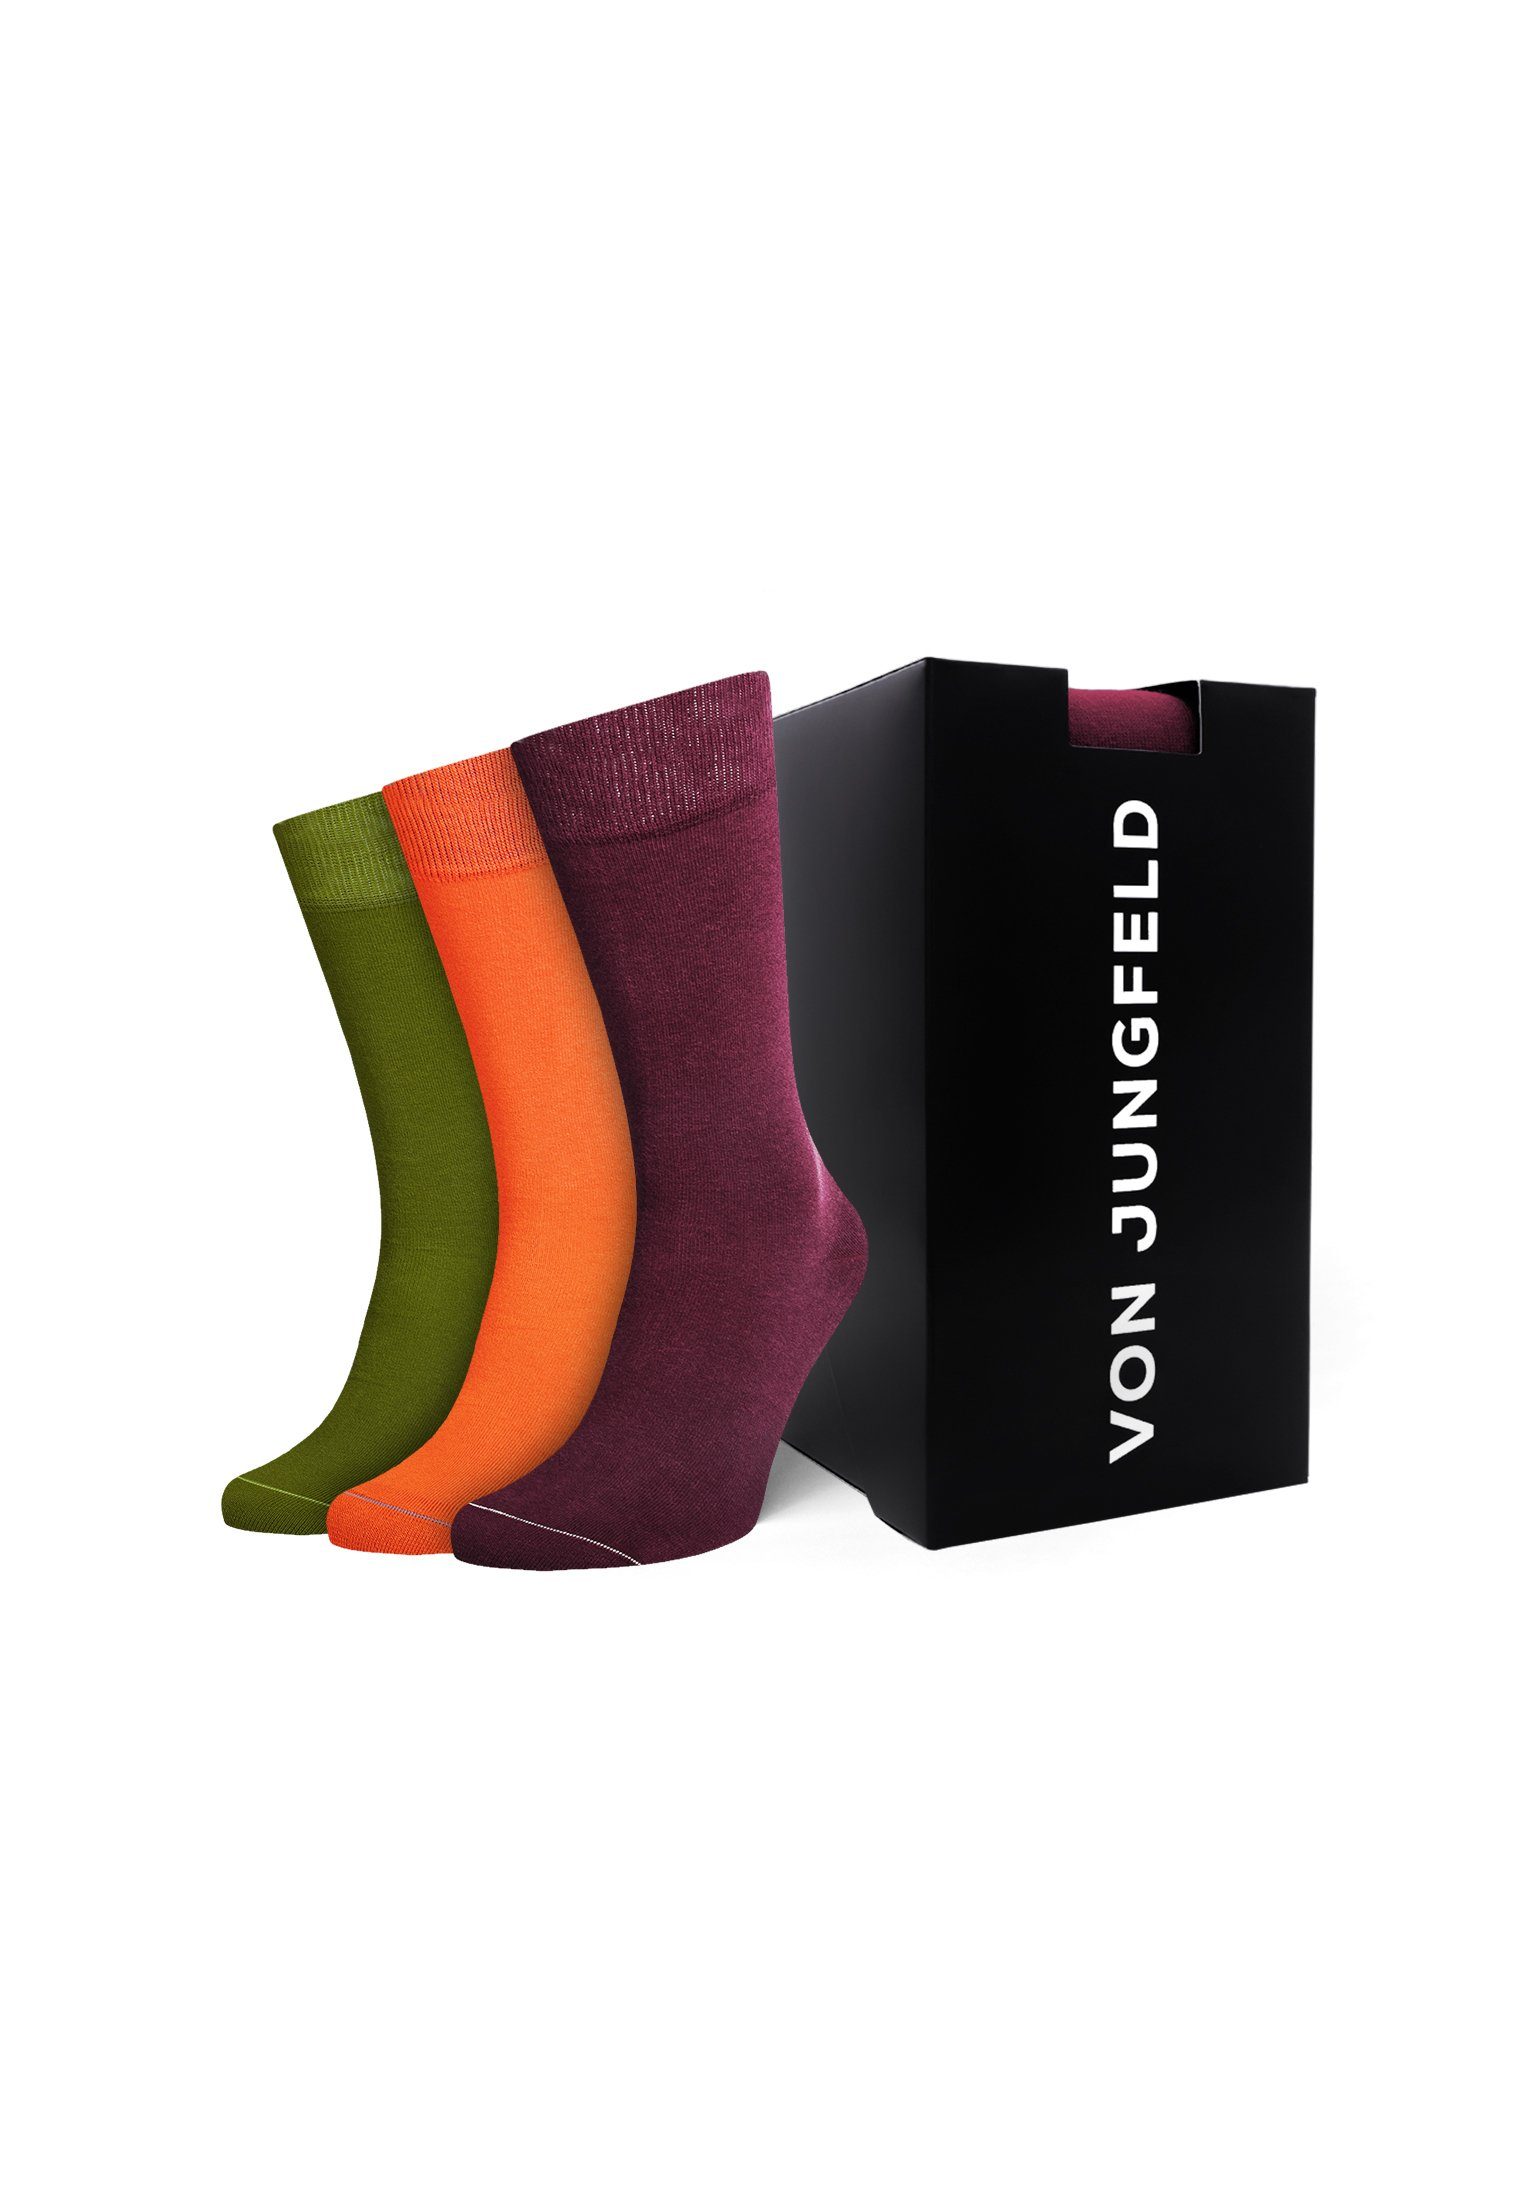 Socken von Jungfeld Box Geschenk